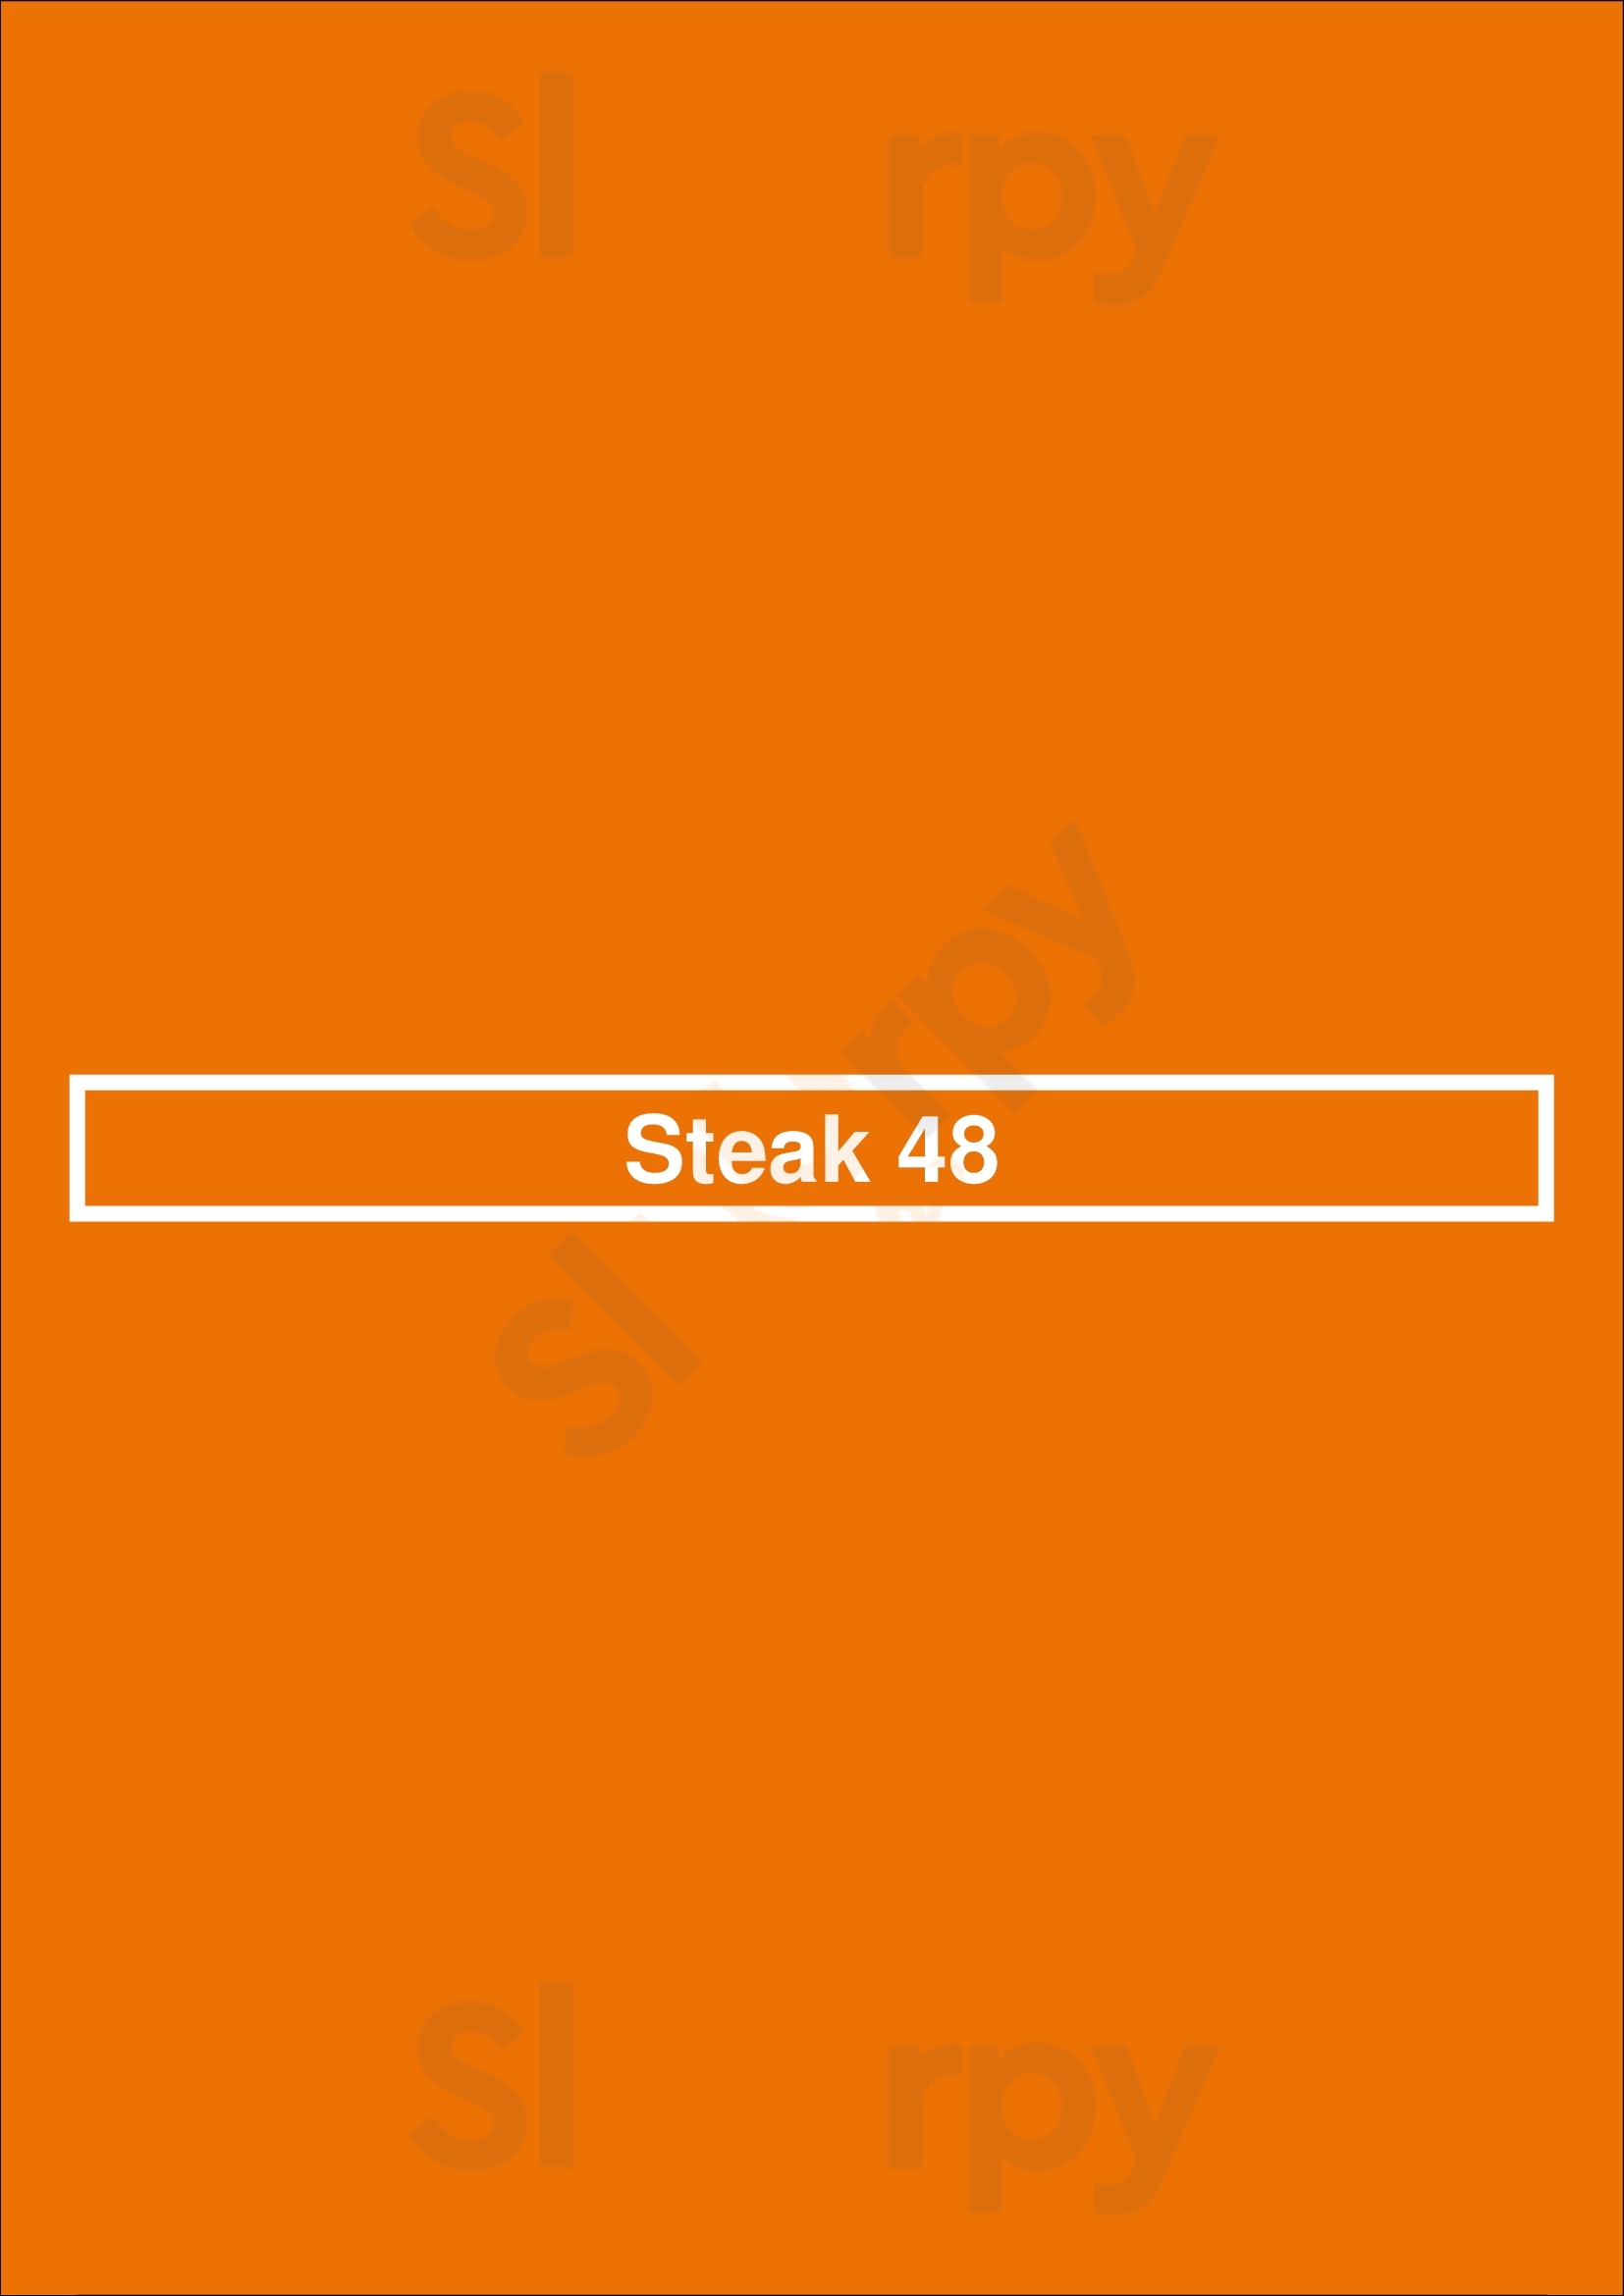 Steak 48 Chicago Menu - 1